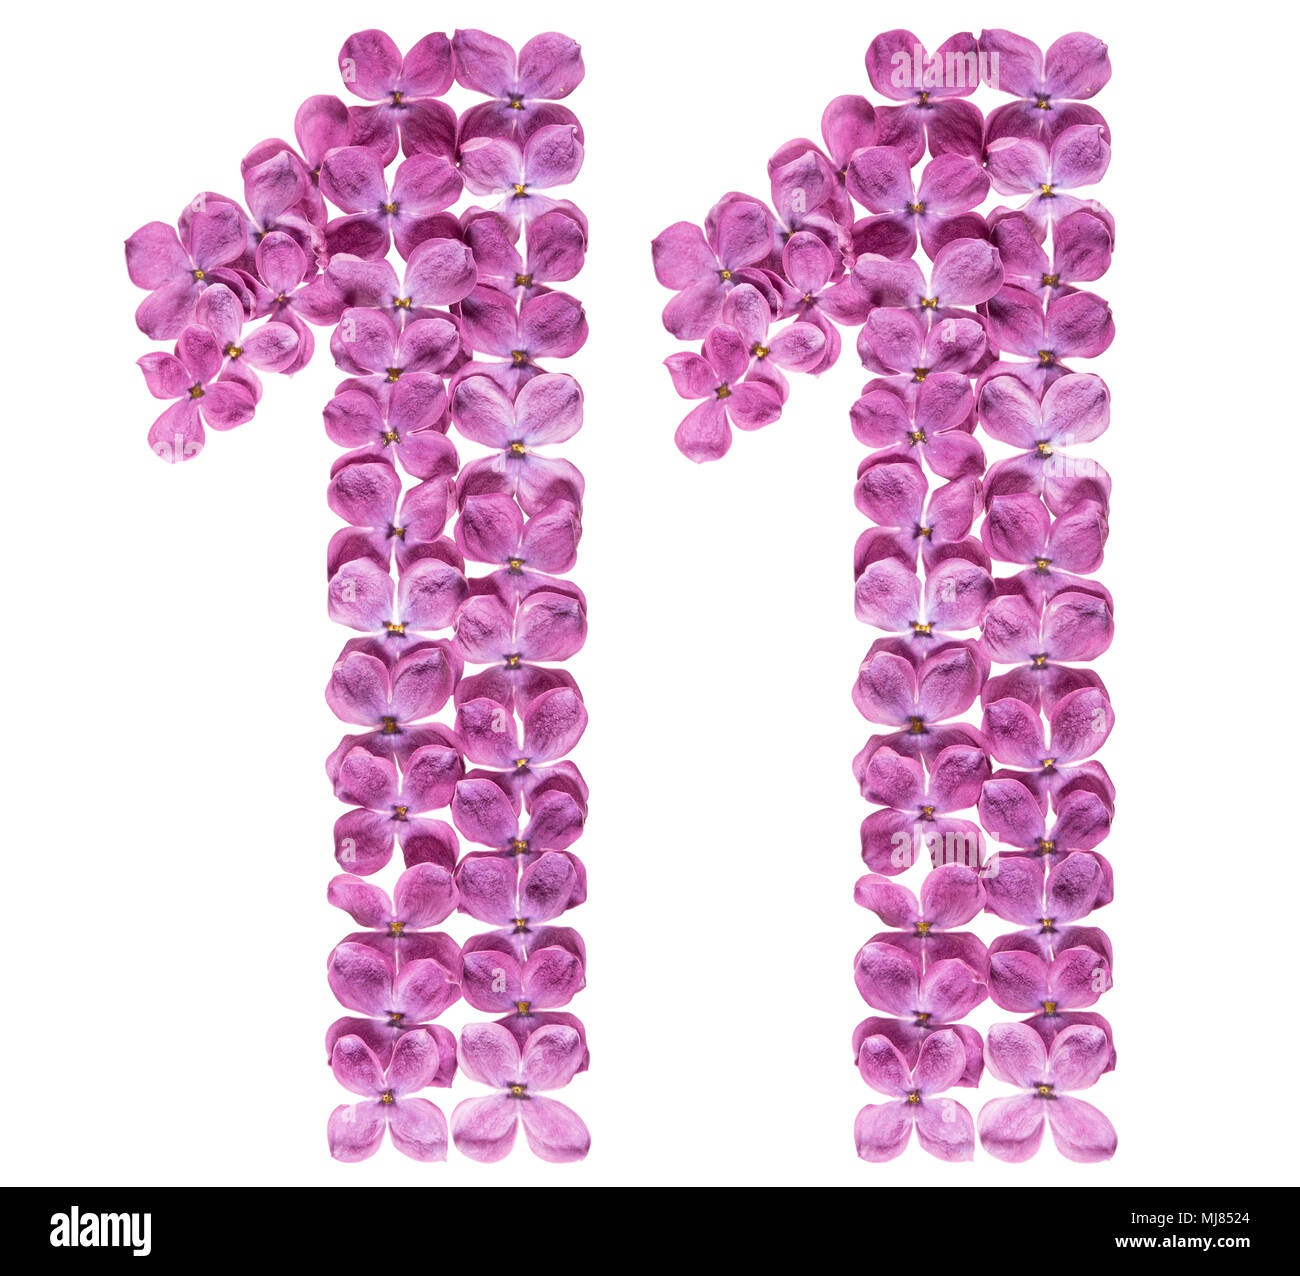 Numero arabo 11, undici, dai fiori di lilla, isolati su sfondo bianco Foto Stock